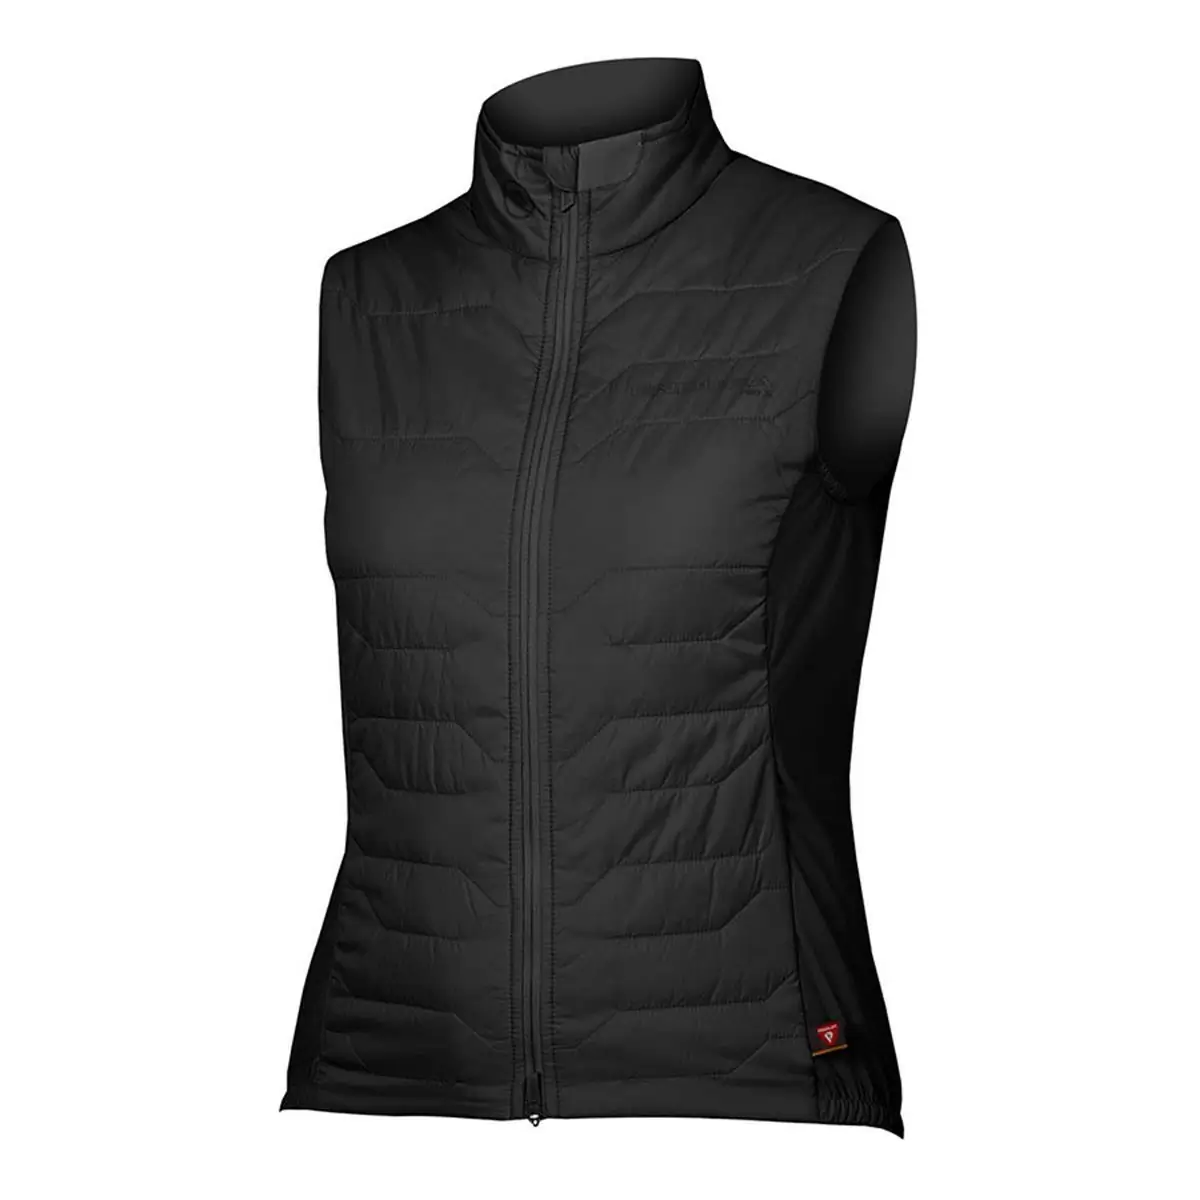 Pro SL PrimaLoft Rain/Windproof Vest Women's Vest Black size XS - image